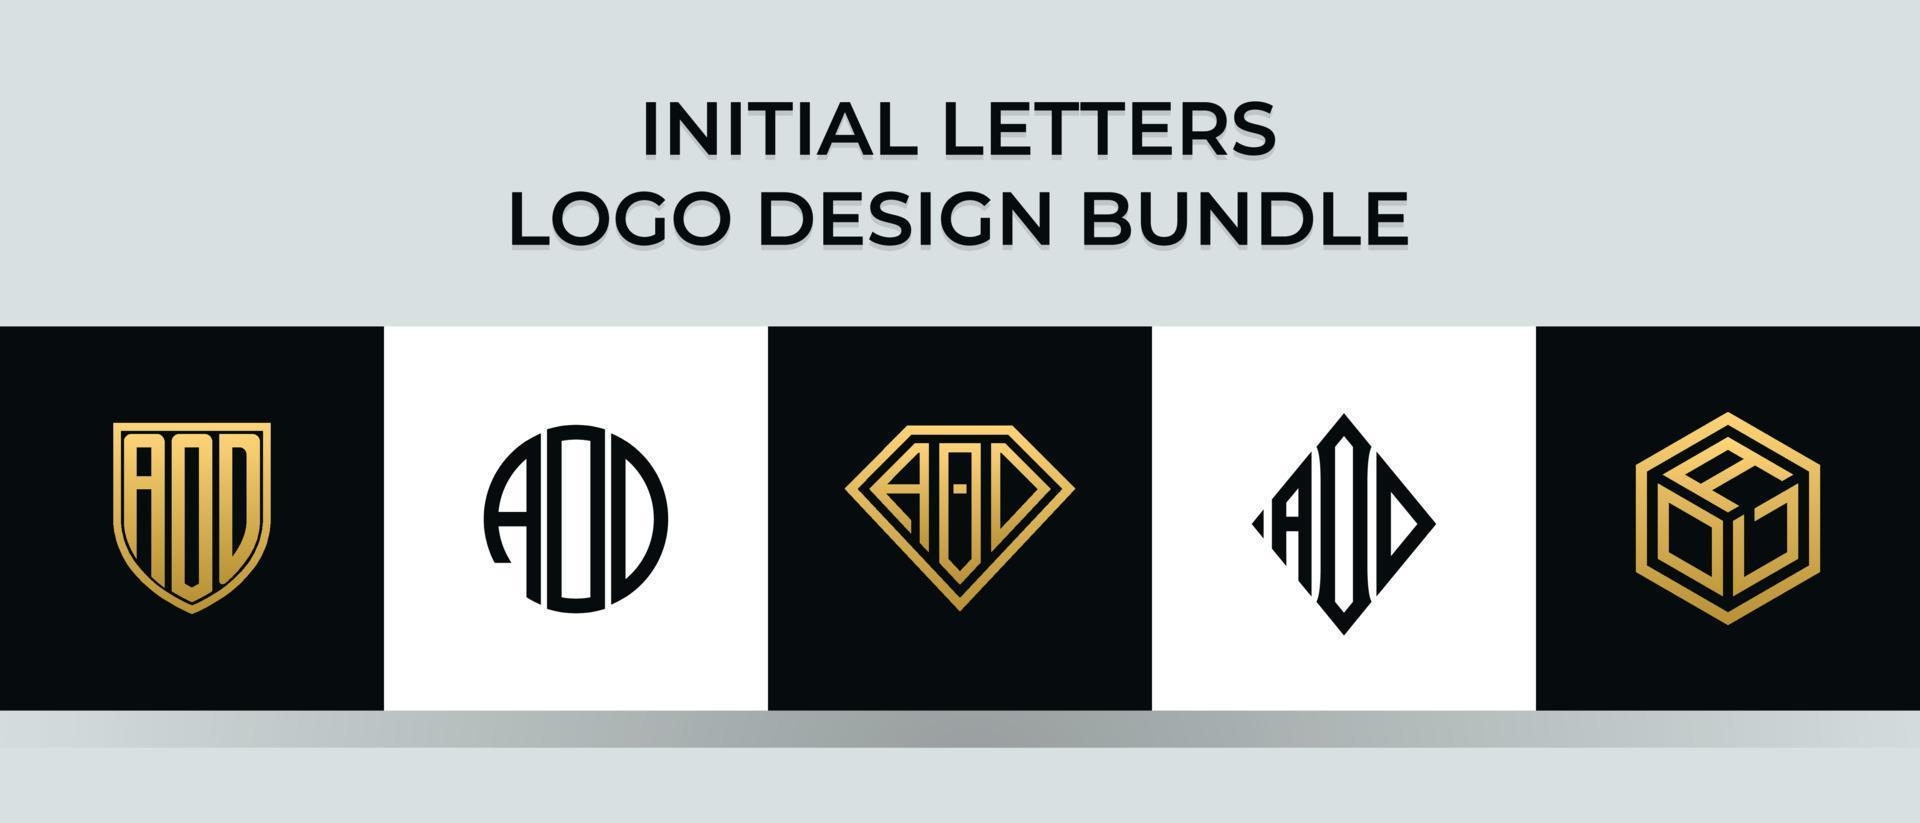 Initial letters AOD logo designs Bundle vector